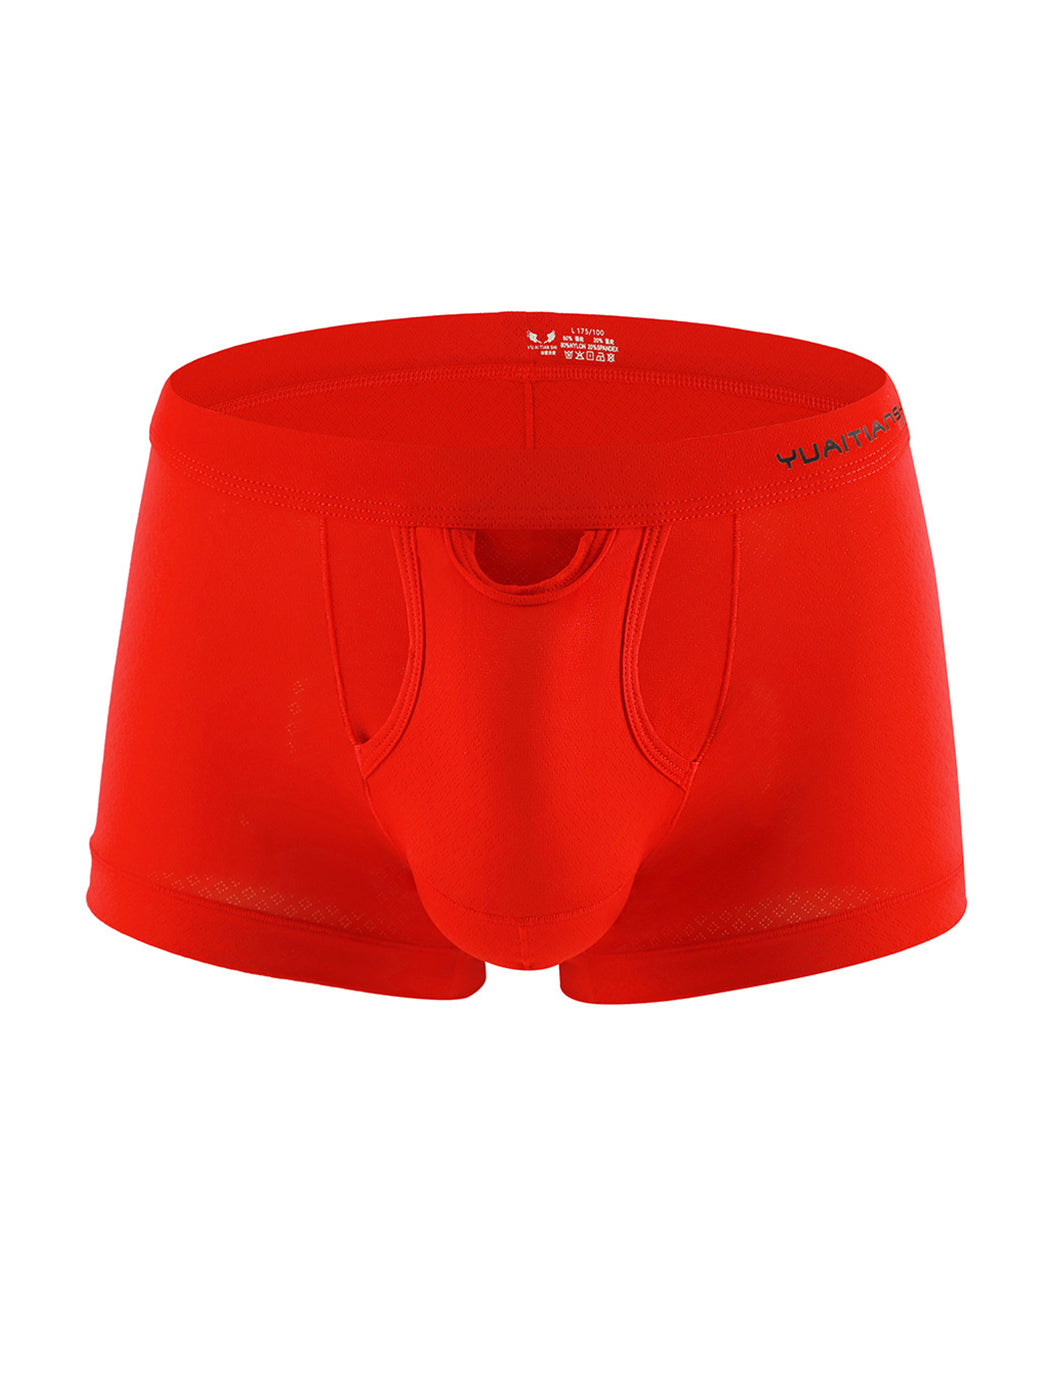 Men's Three-Opening Underwear